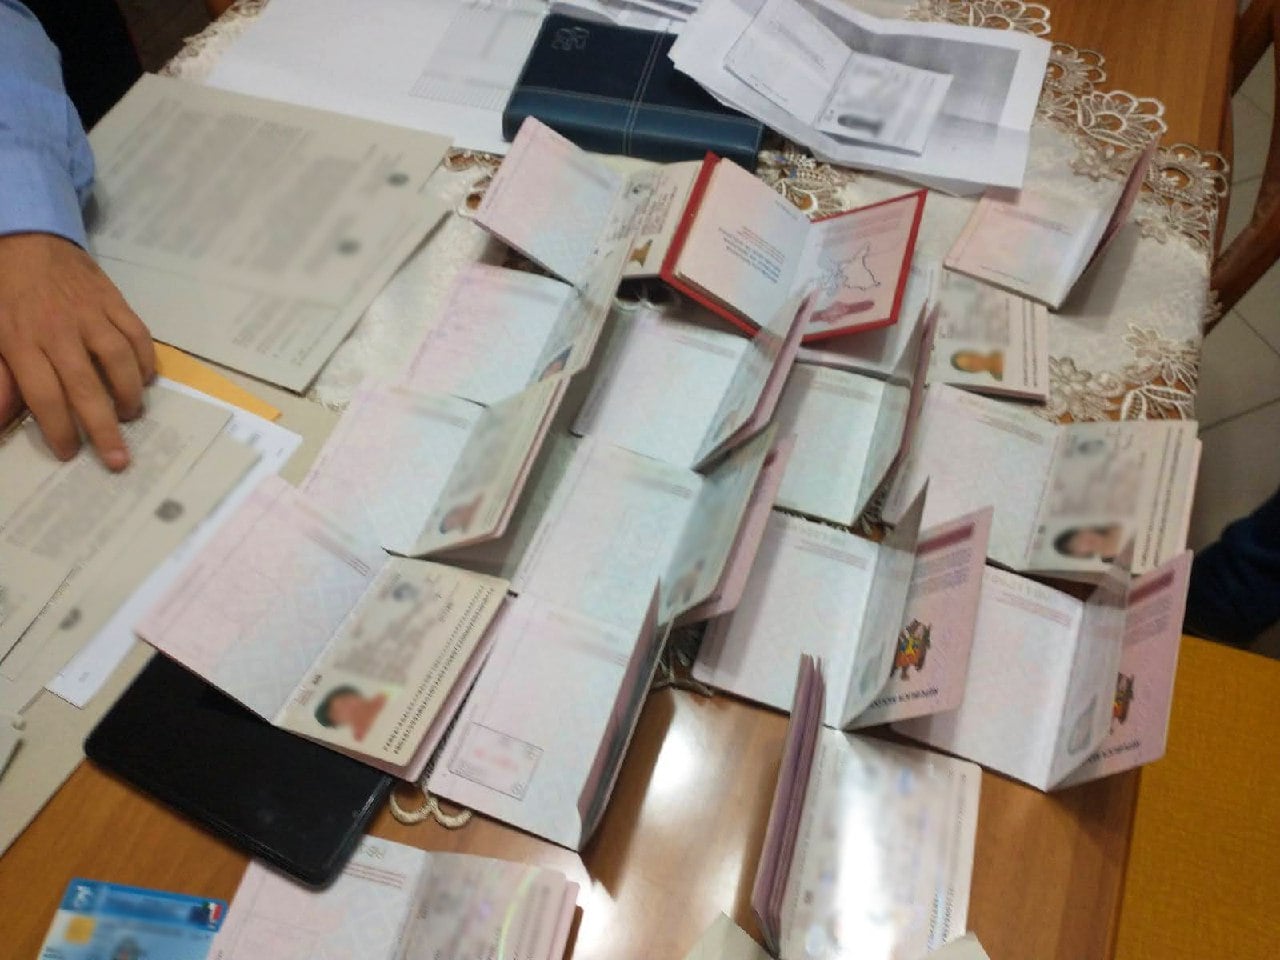 Правоохранители из Молдовы и Италии раскрыли сеть торговцев людьми (ФОТО)